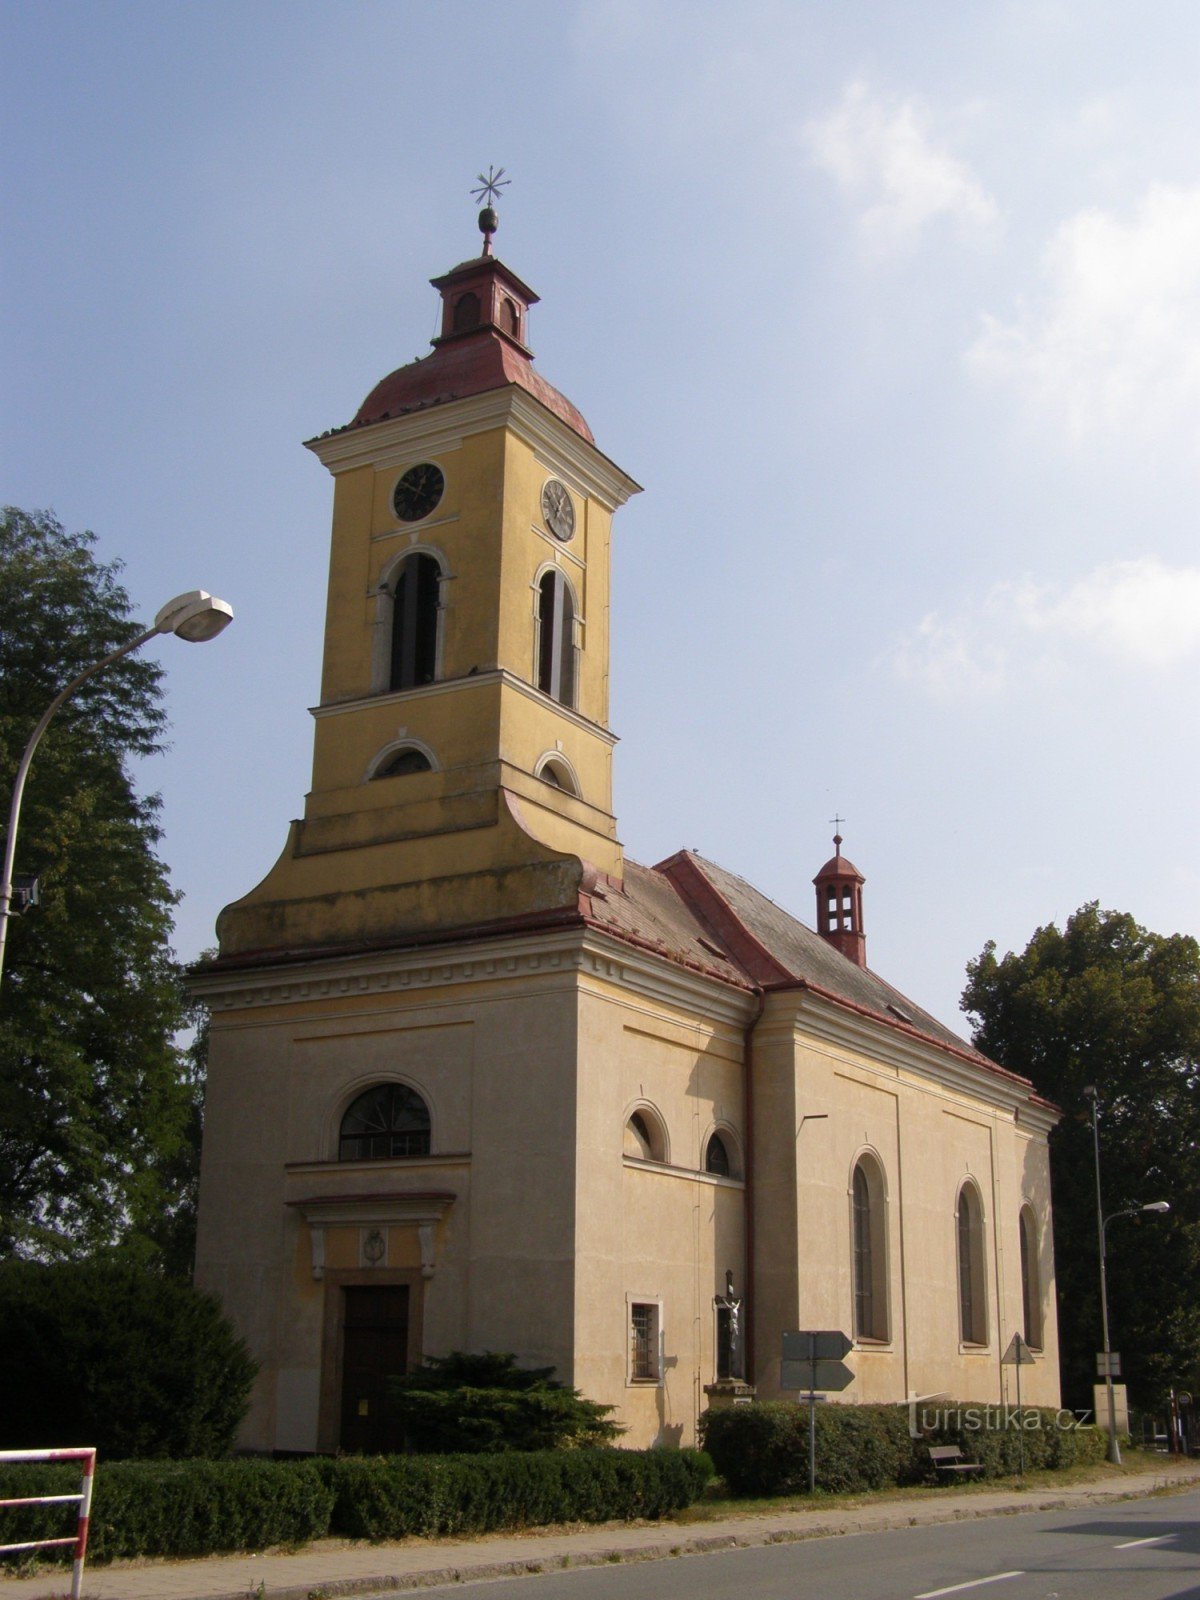 Štězery - cerkev sv. Mark